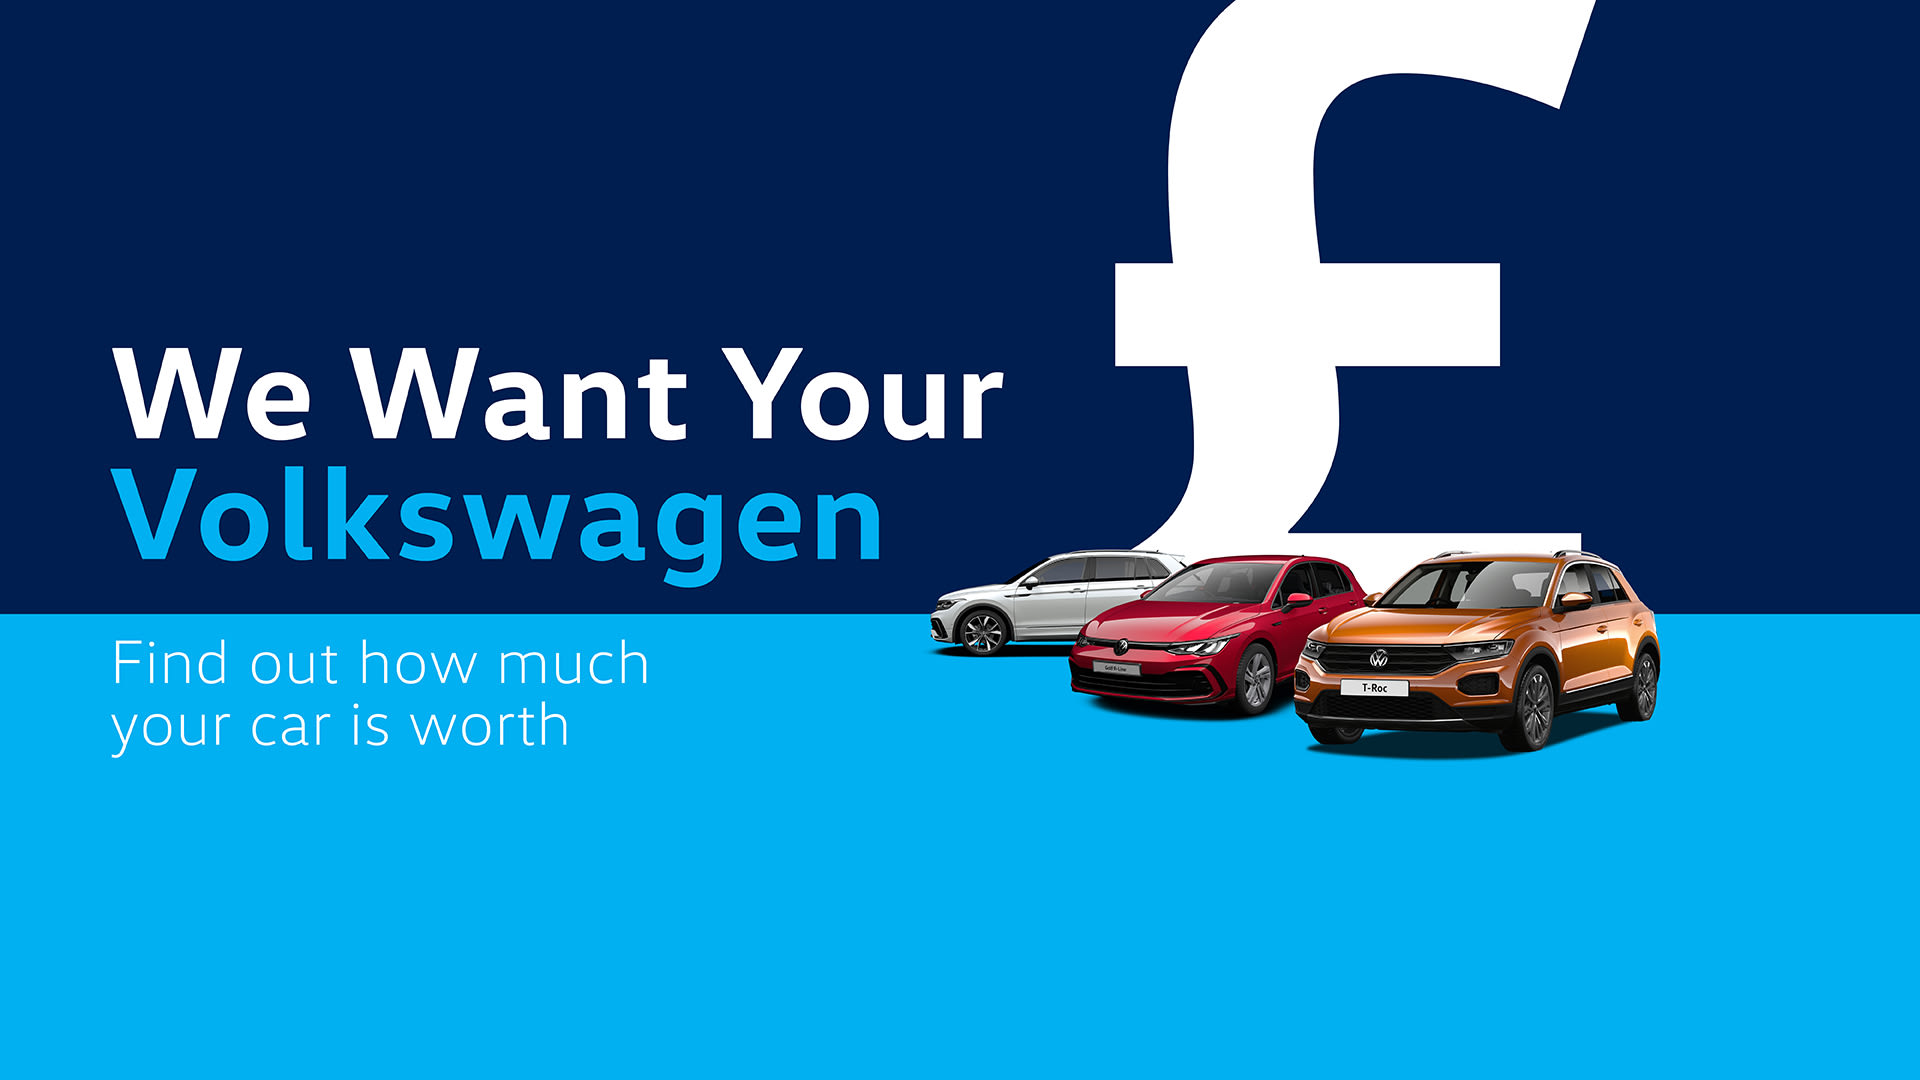 We Want Your Volkswagen